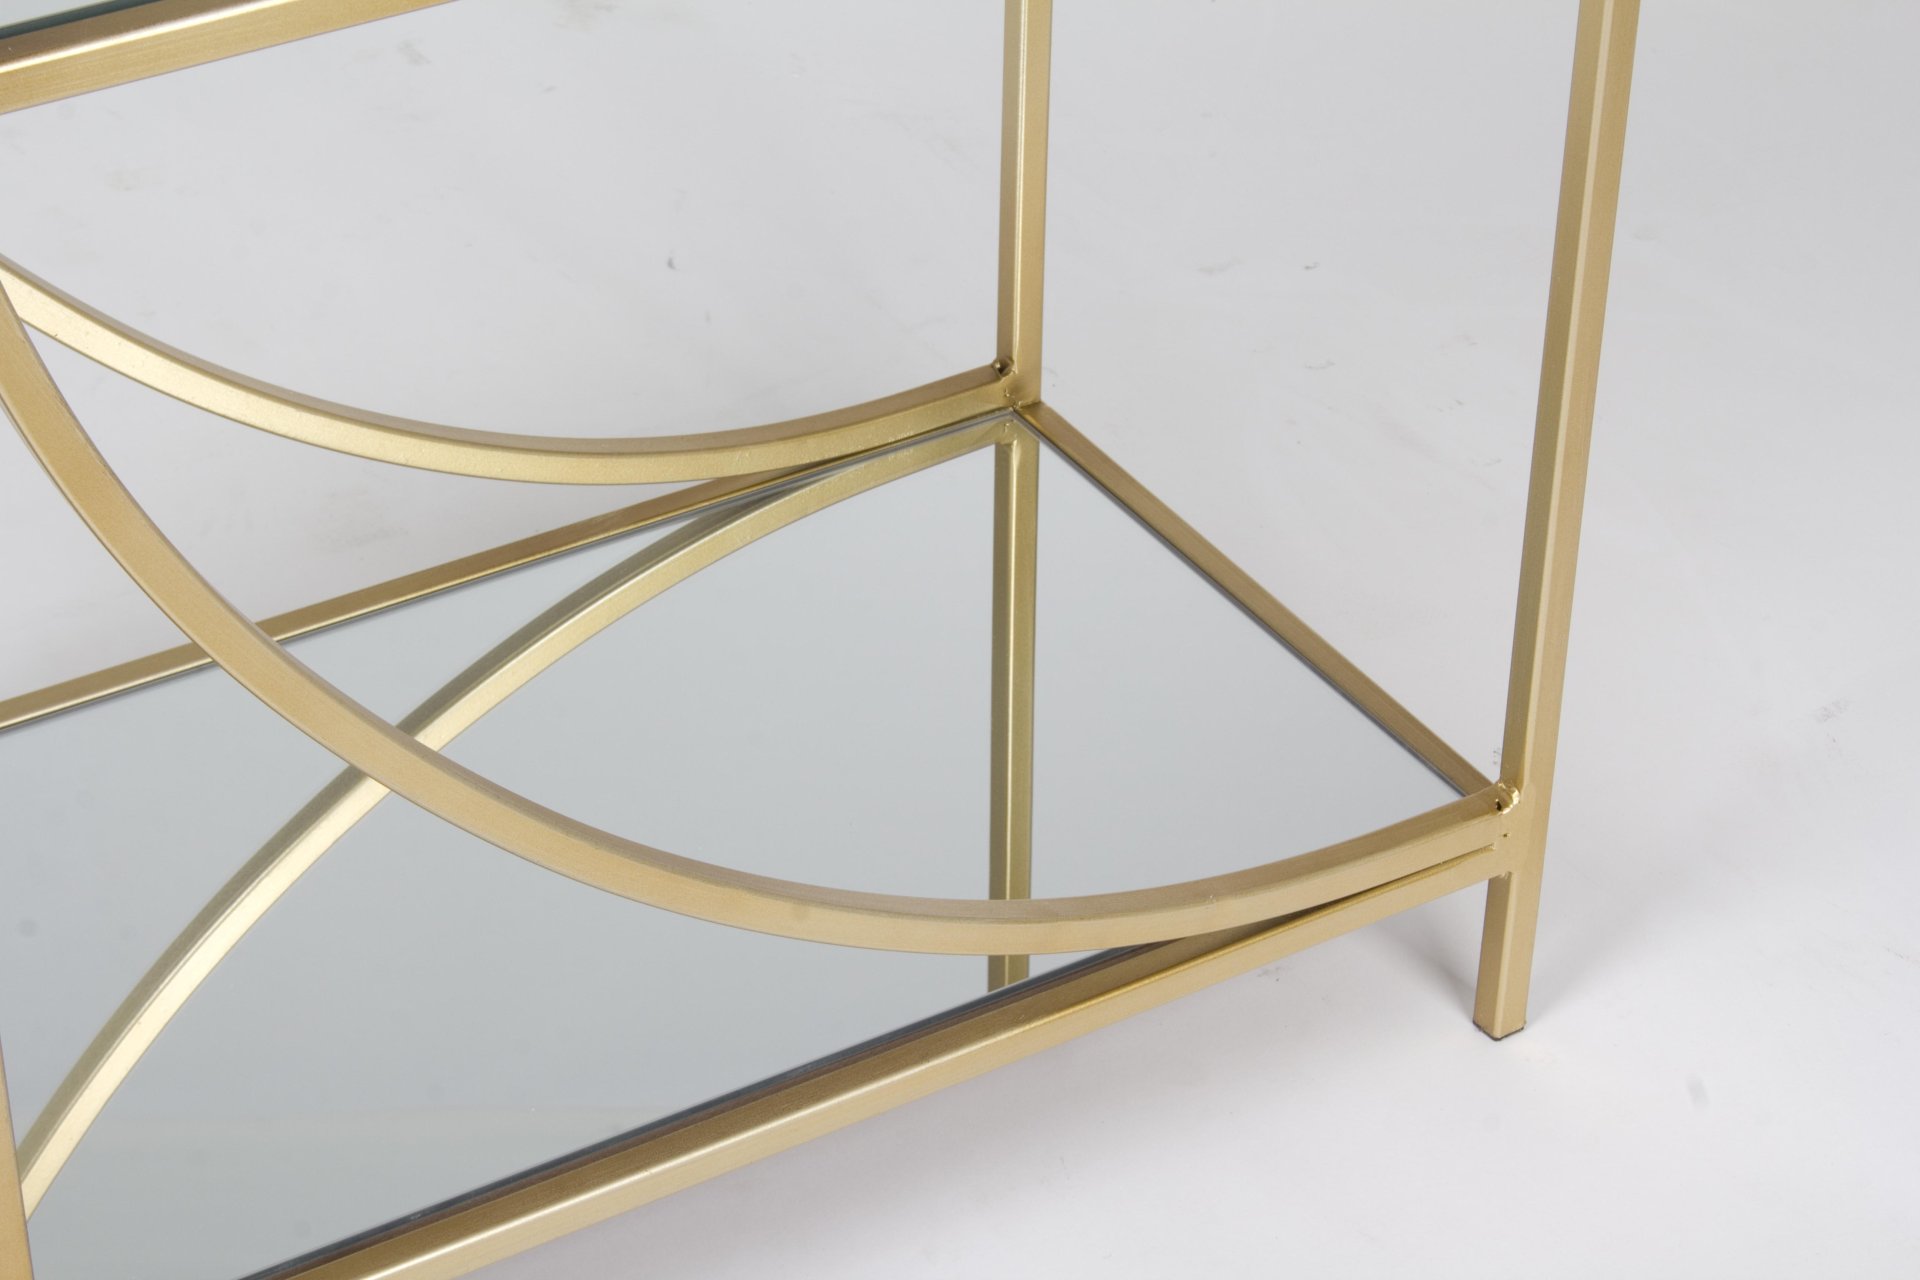 Das Regal Elenor überzeugt mit seinem klassischen Design. Gefertigt wurde es aus Glas. Das Gestell ist aus Metall und hat eine goldene Farbe. Das Regal verfügt über zwei Fächer. Die Breite beträgt 81 cm.